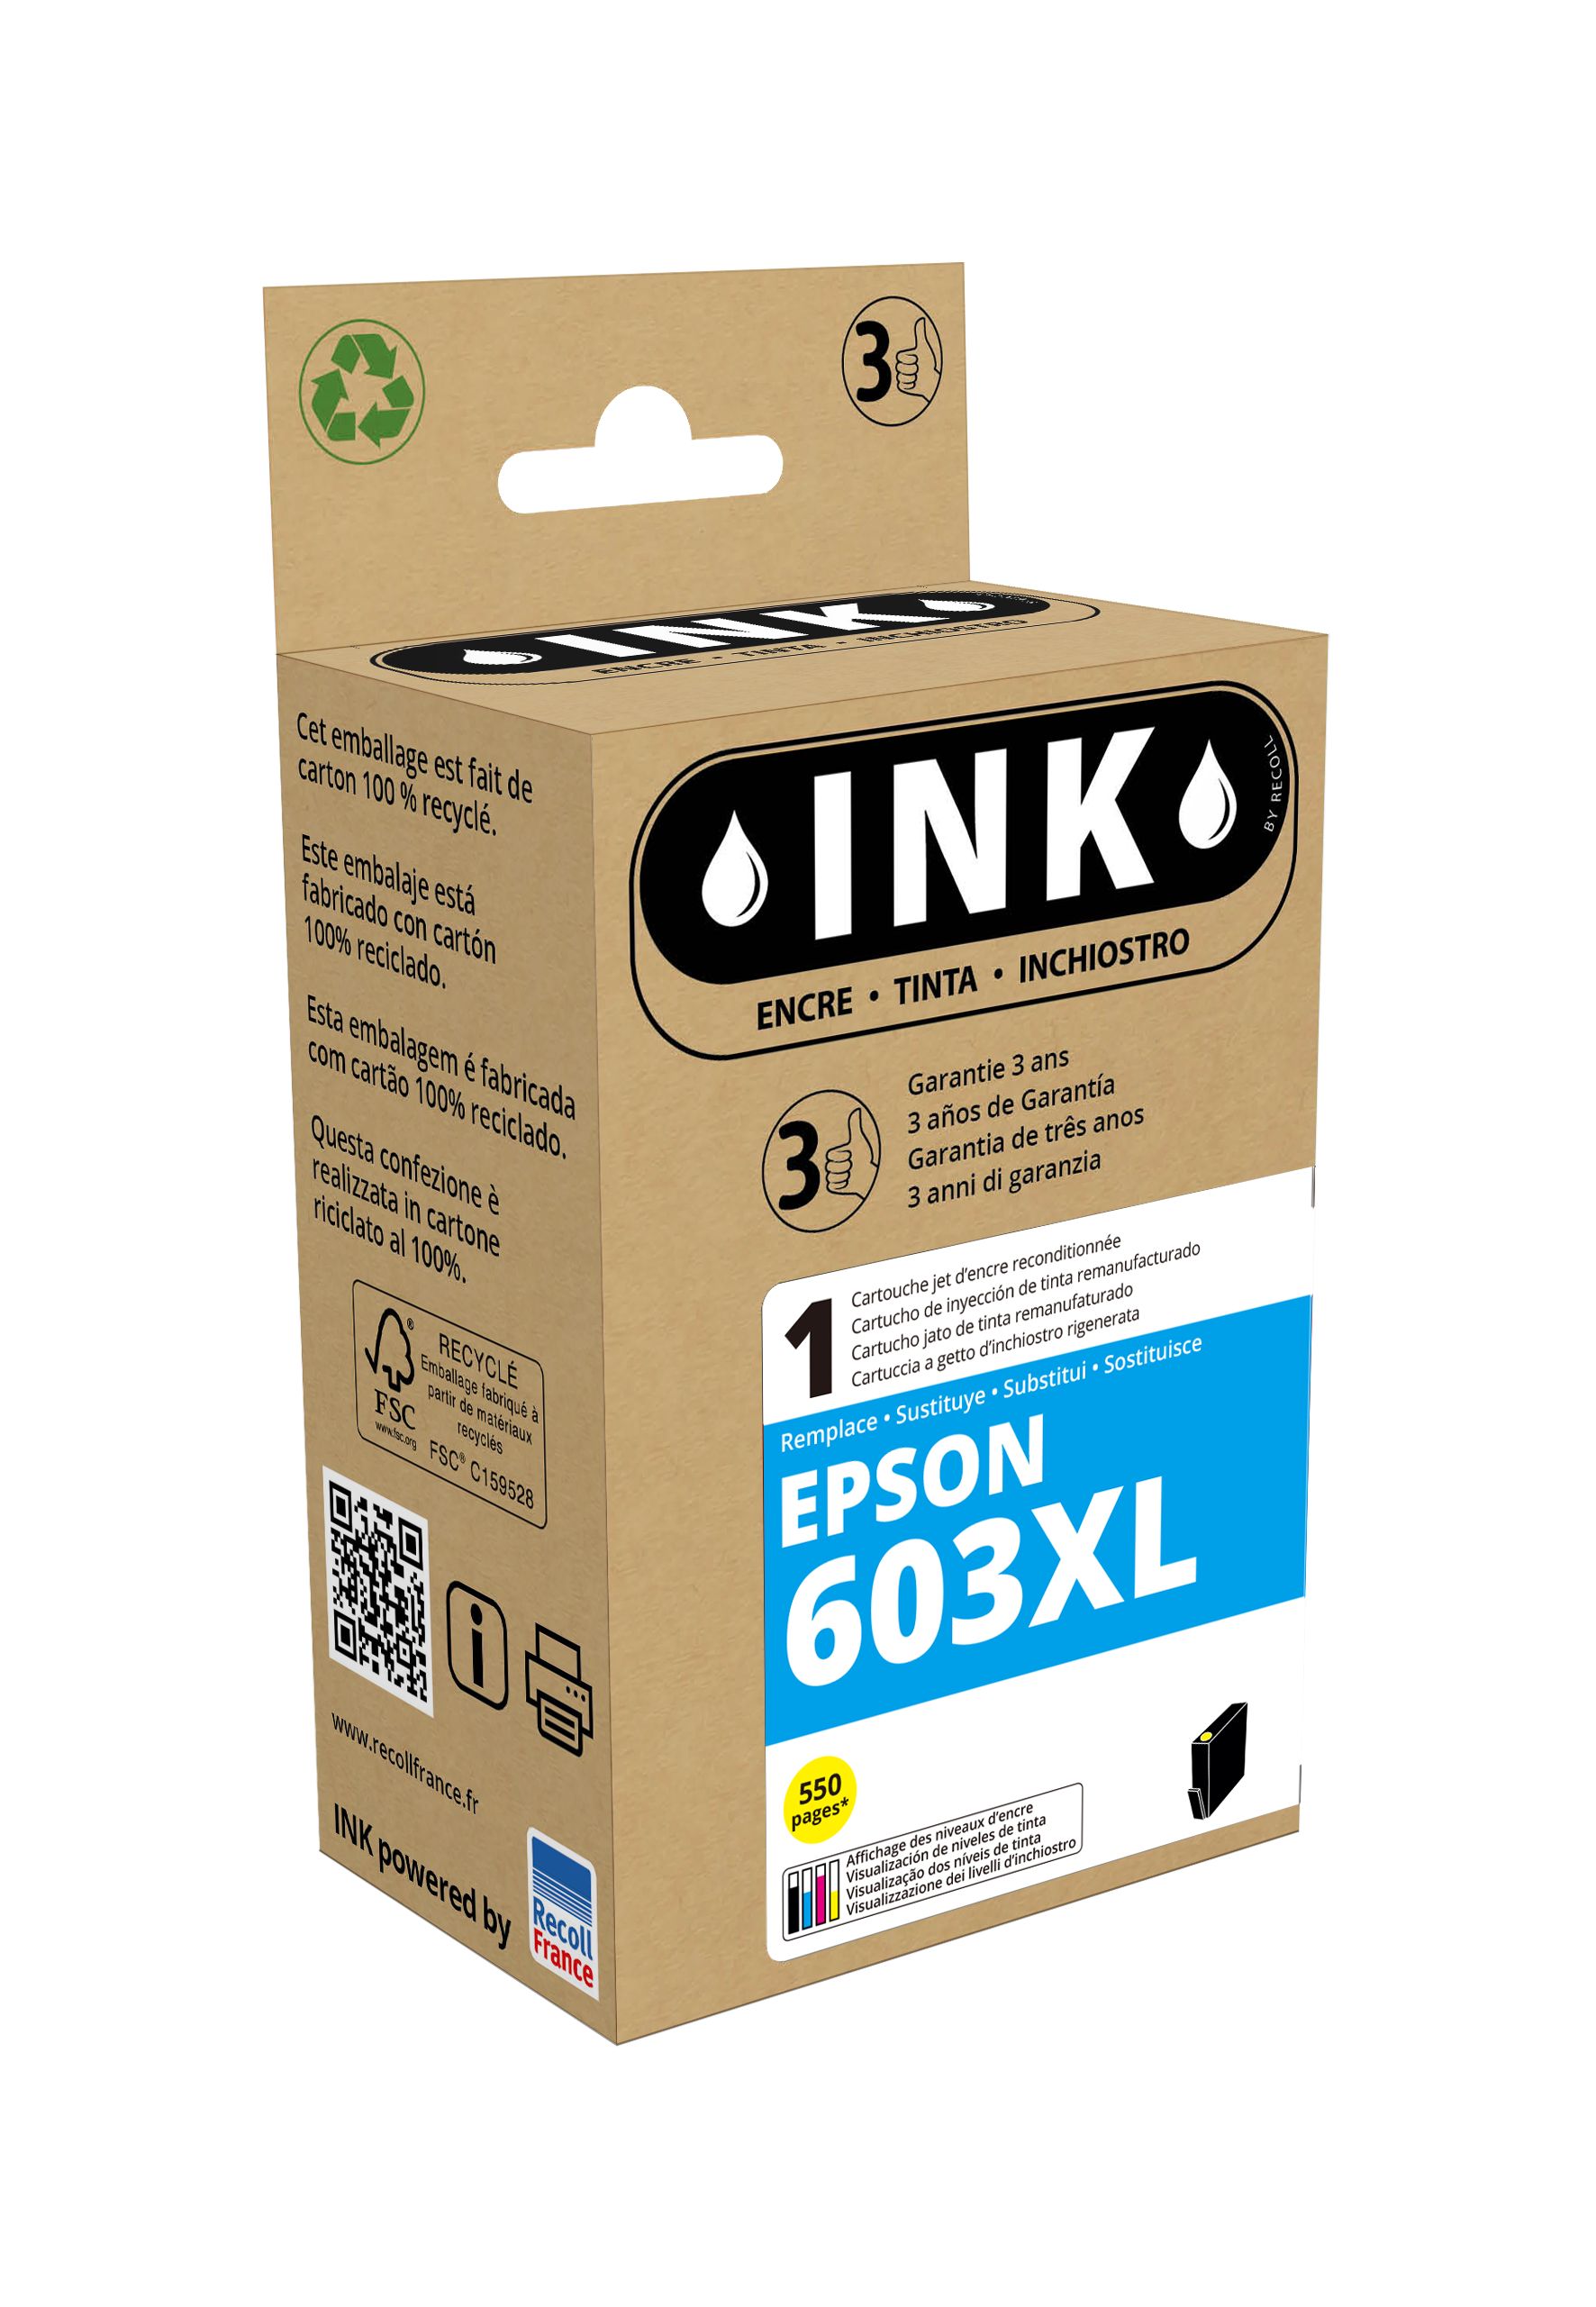 Cartouche compatible Epson 603XL Etoile de mer - jaune - ink